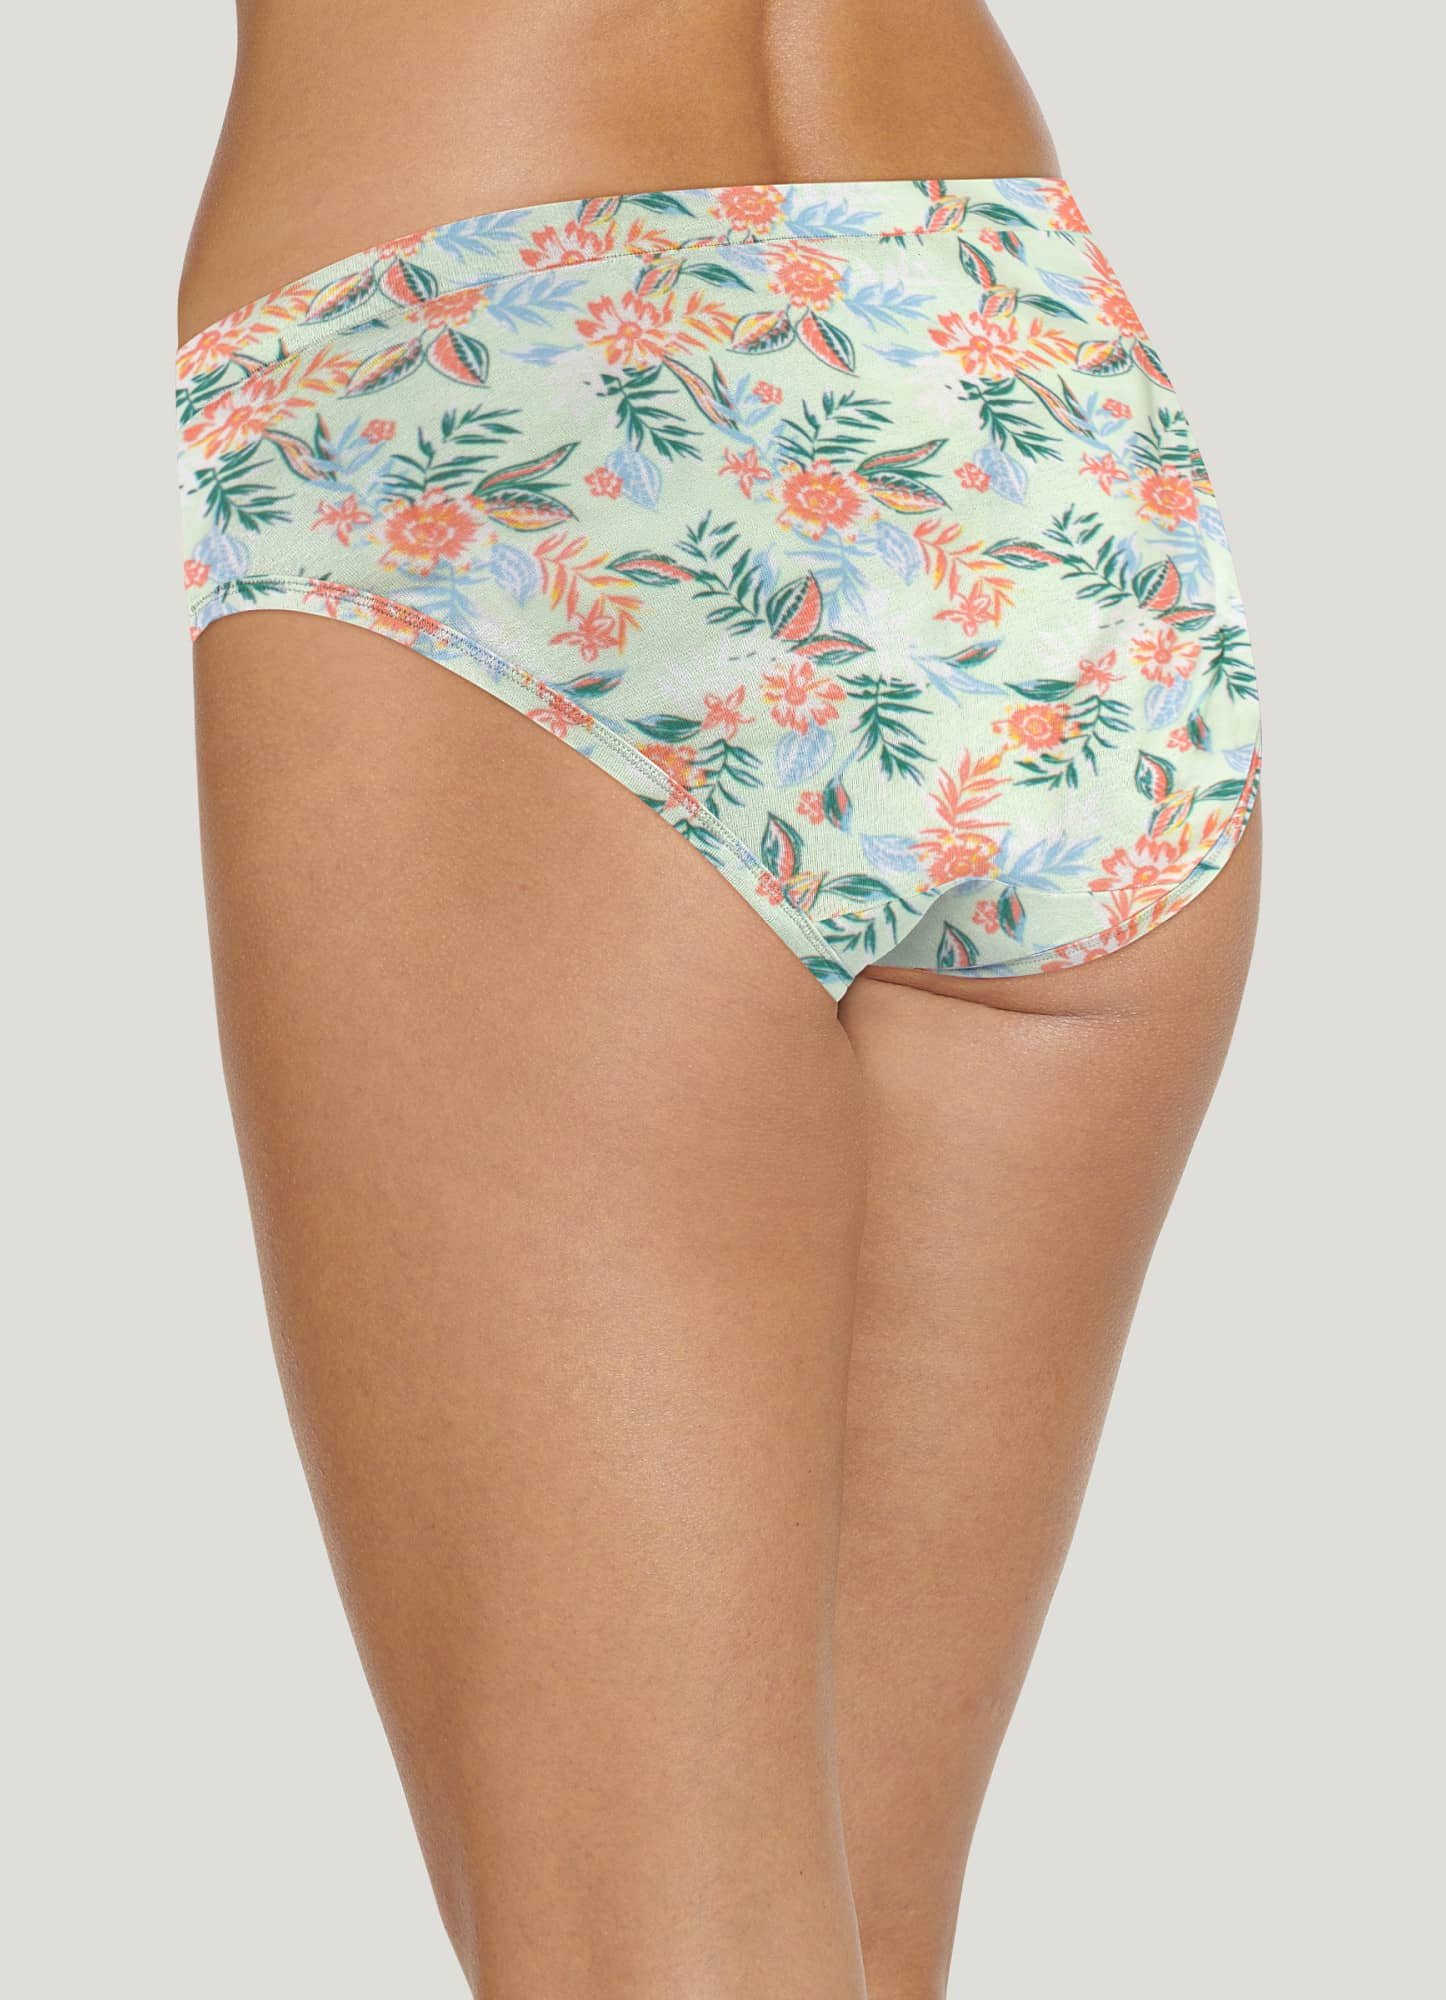 Buy Jockey Women Cotton Bikini Panty(Colors and Prints may vary) at